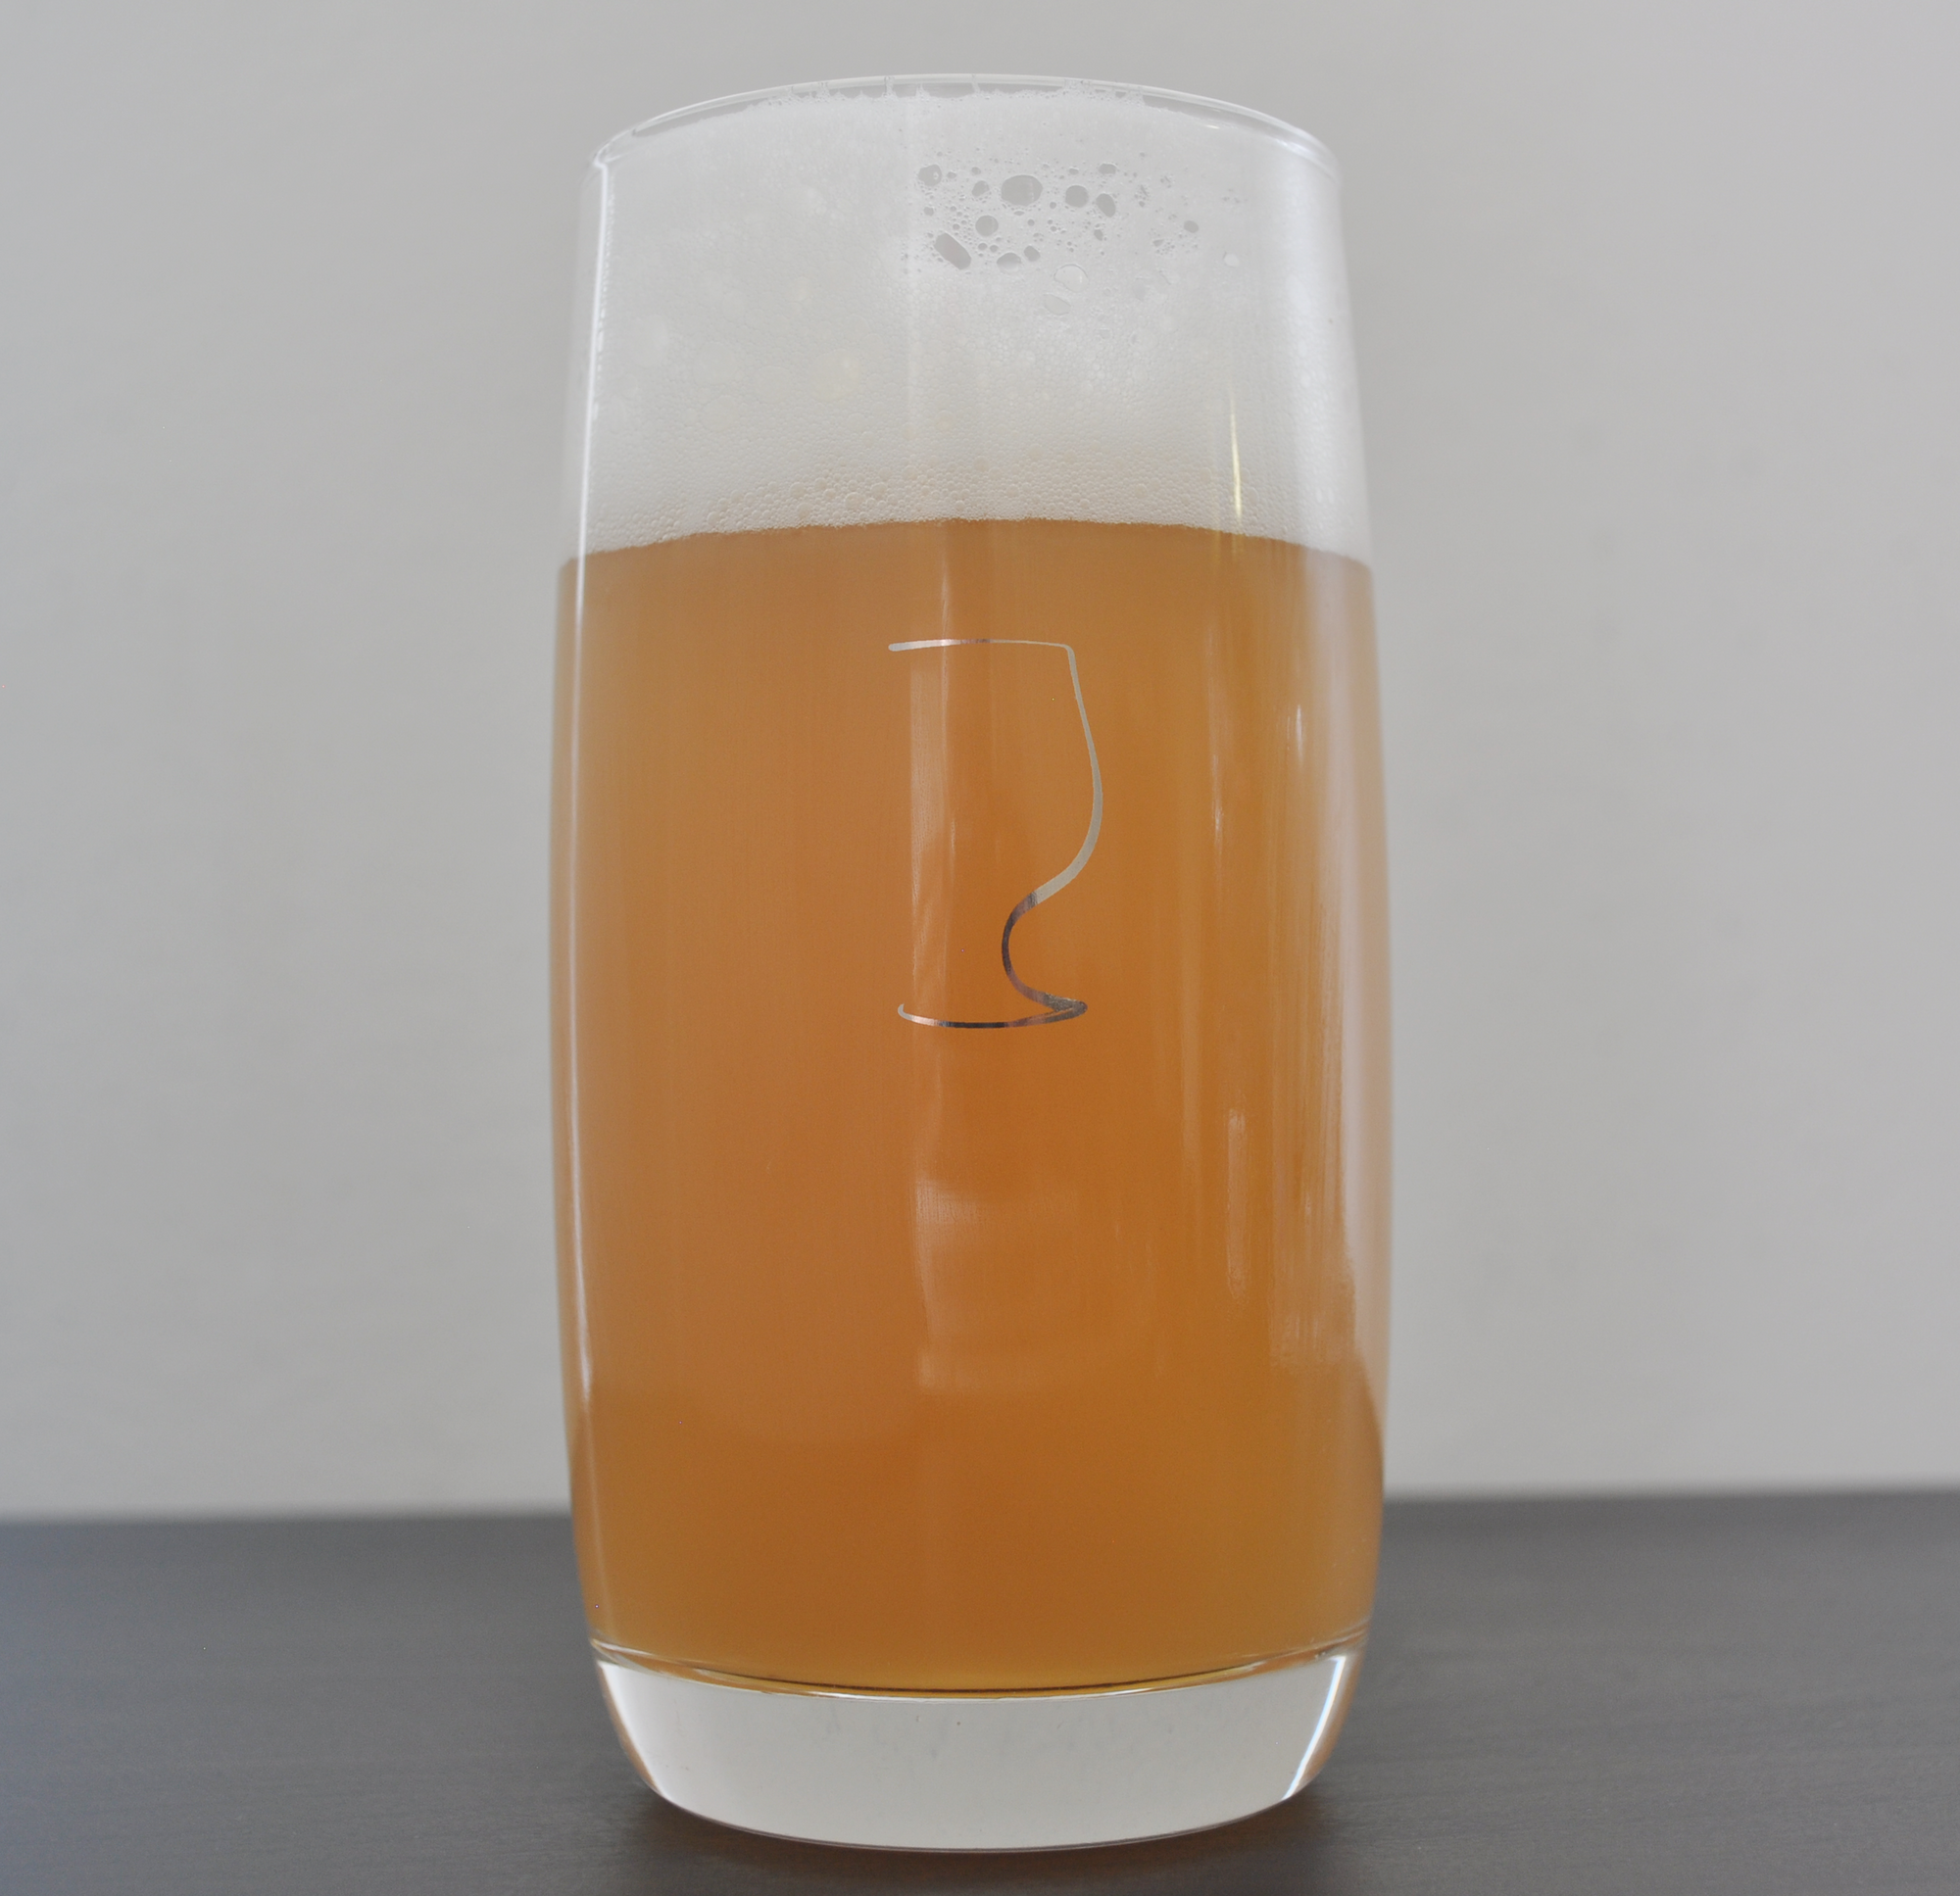 Best Glass For IPA, Proper Beer Glassware, 17oz